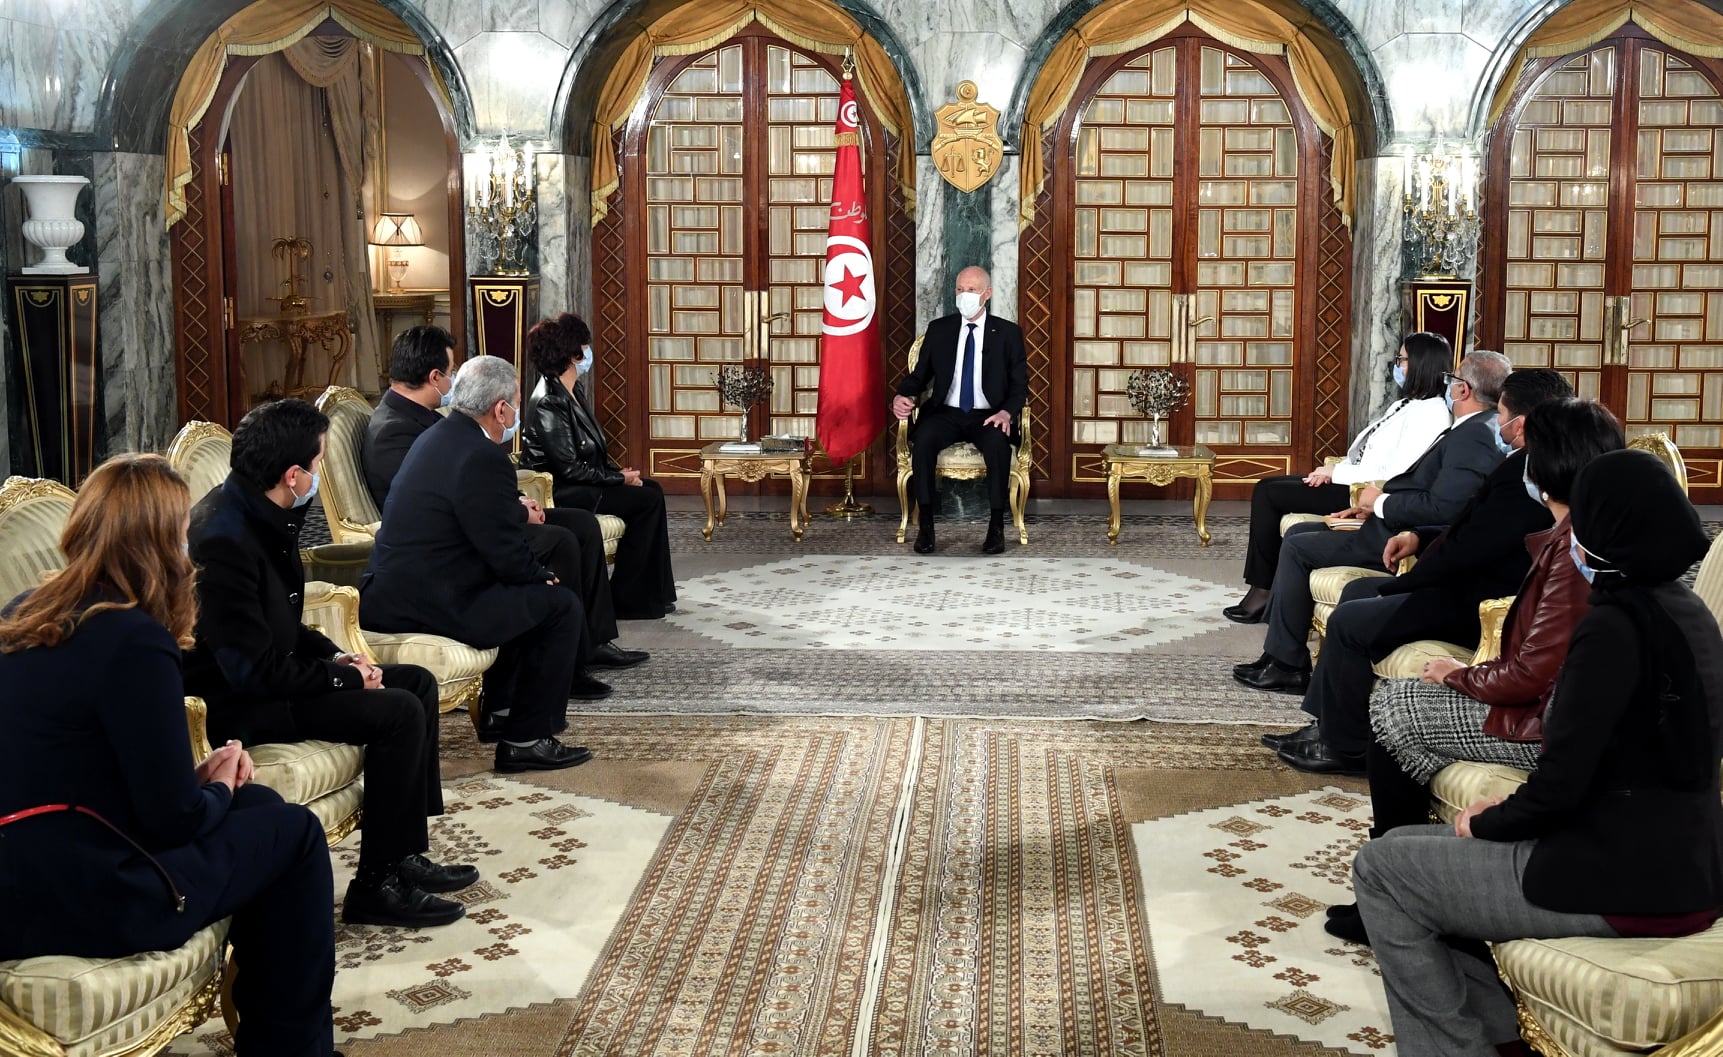 الرئيس التونسي قيس سعيد في لقائه بعدد من النواب بعد حادثة تبادل العنف في البرلمان